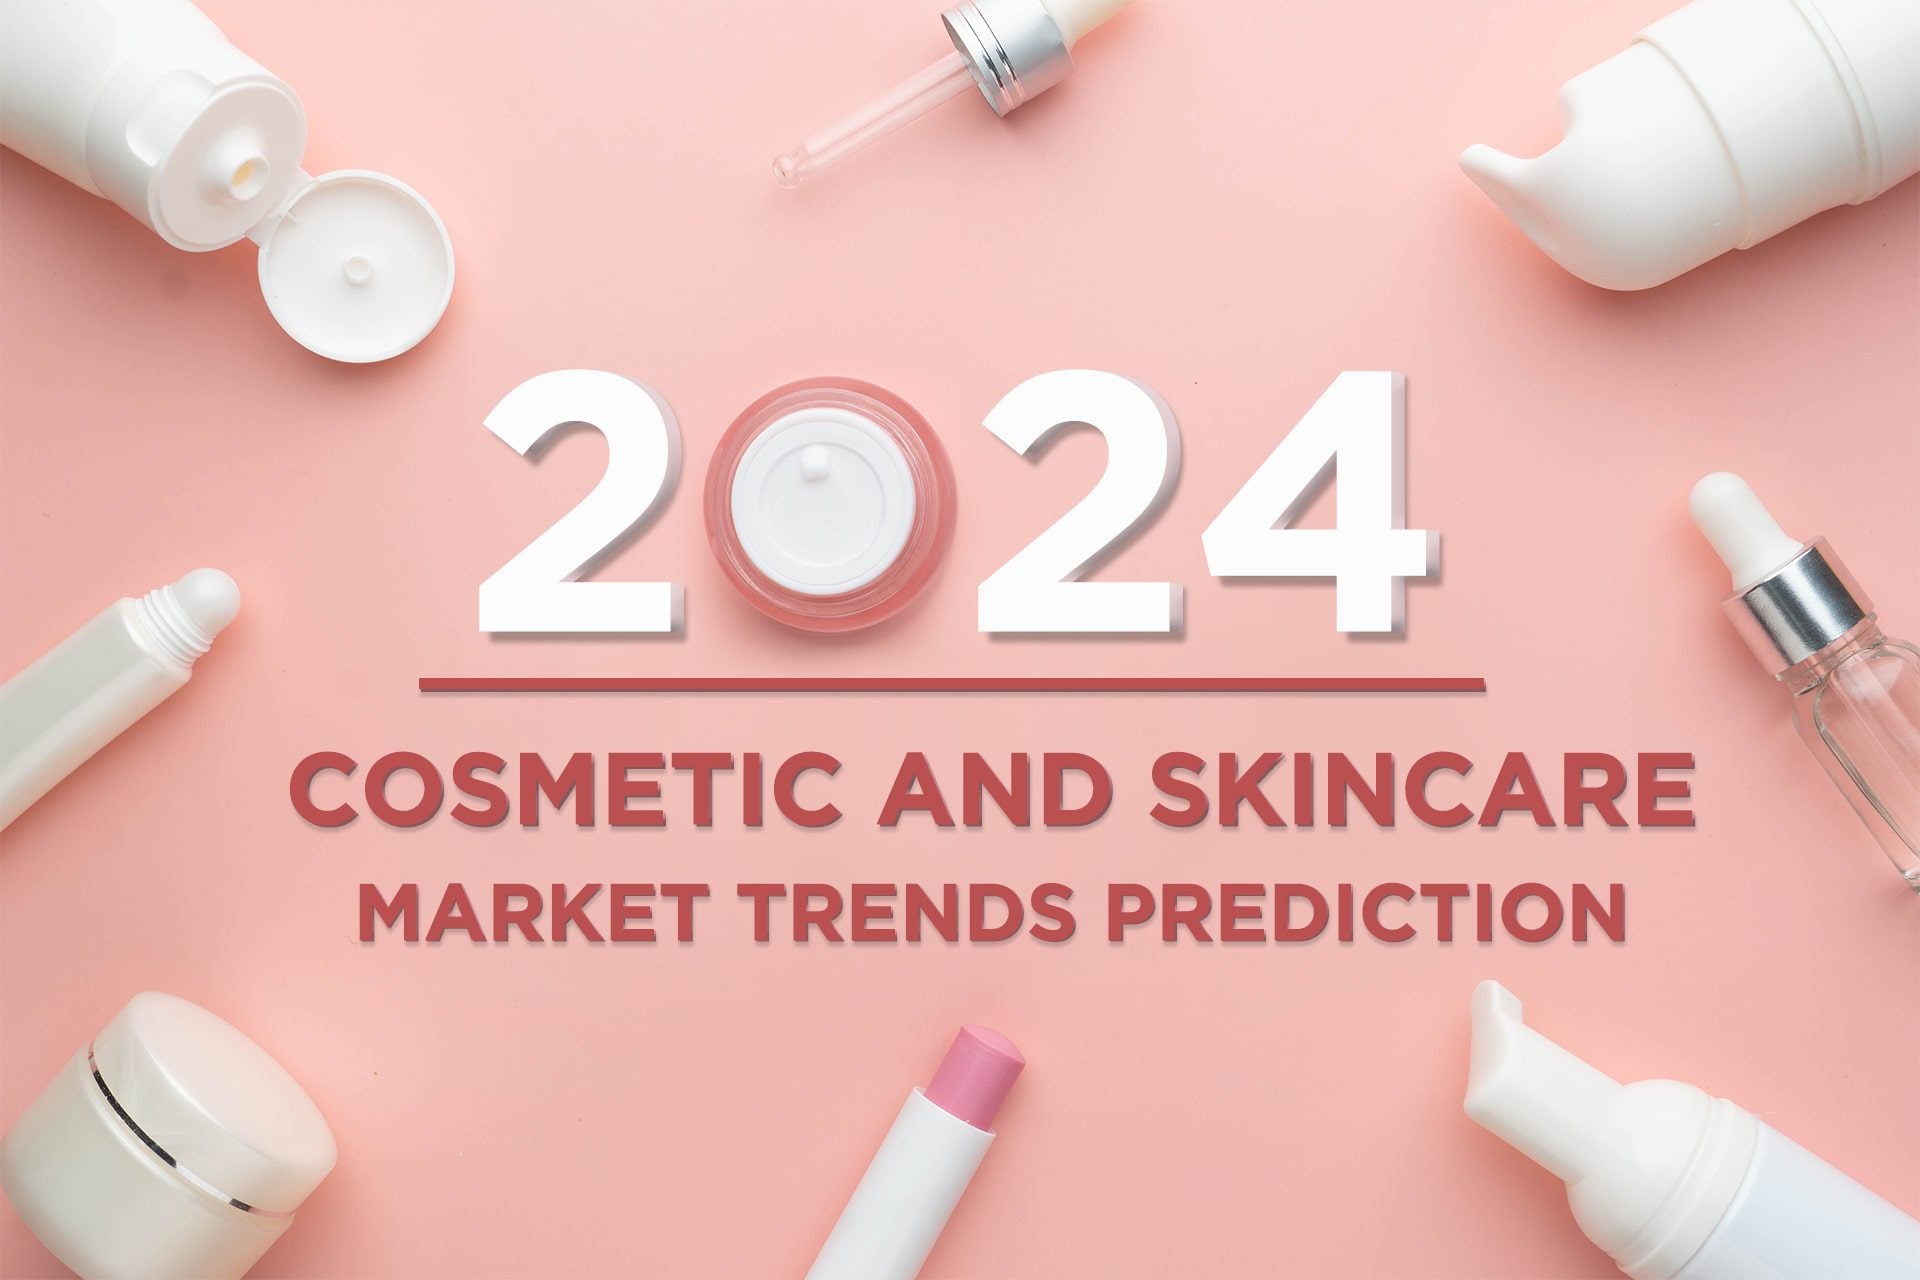 "Navigeren in de toekomst: belangrijke trends die de cosmetica -industrie vormgeven"